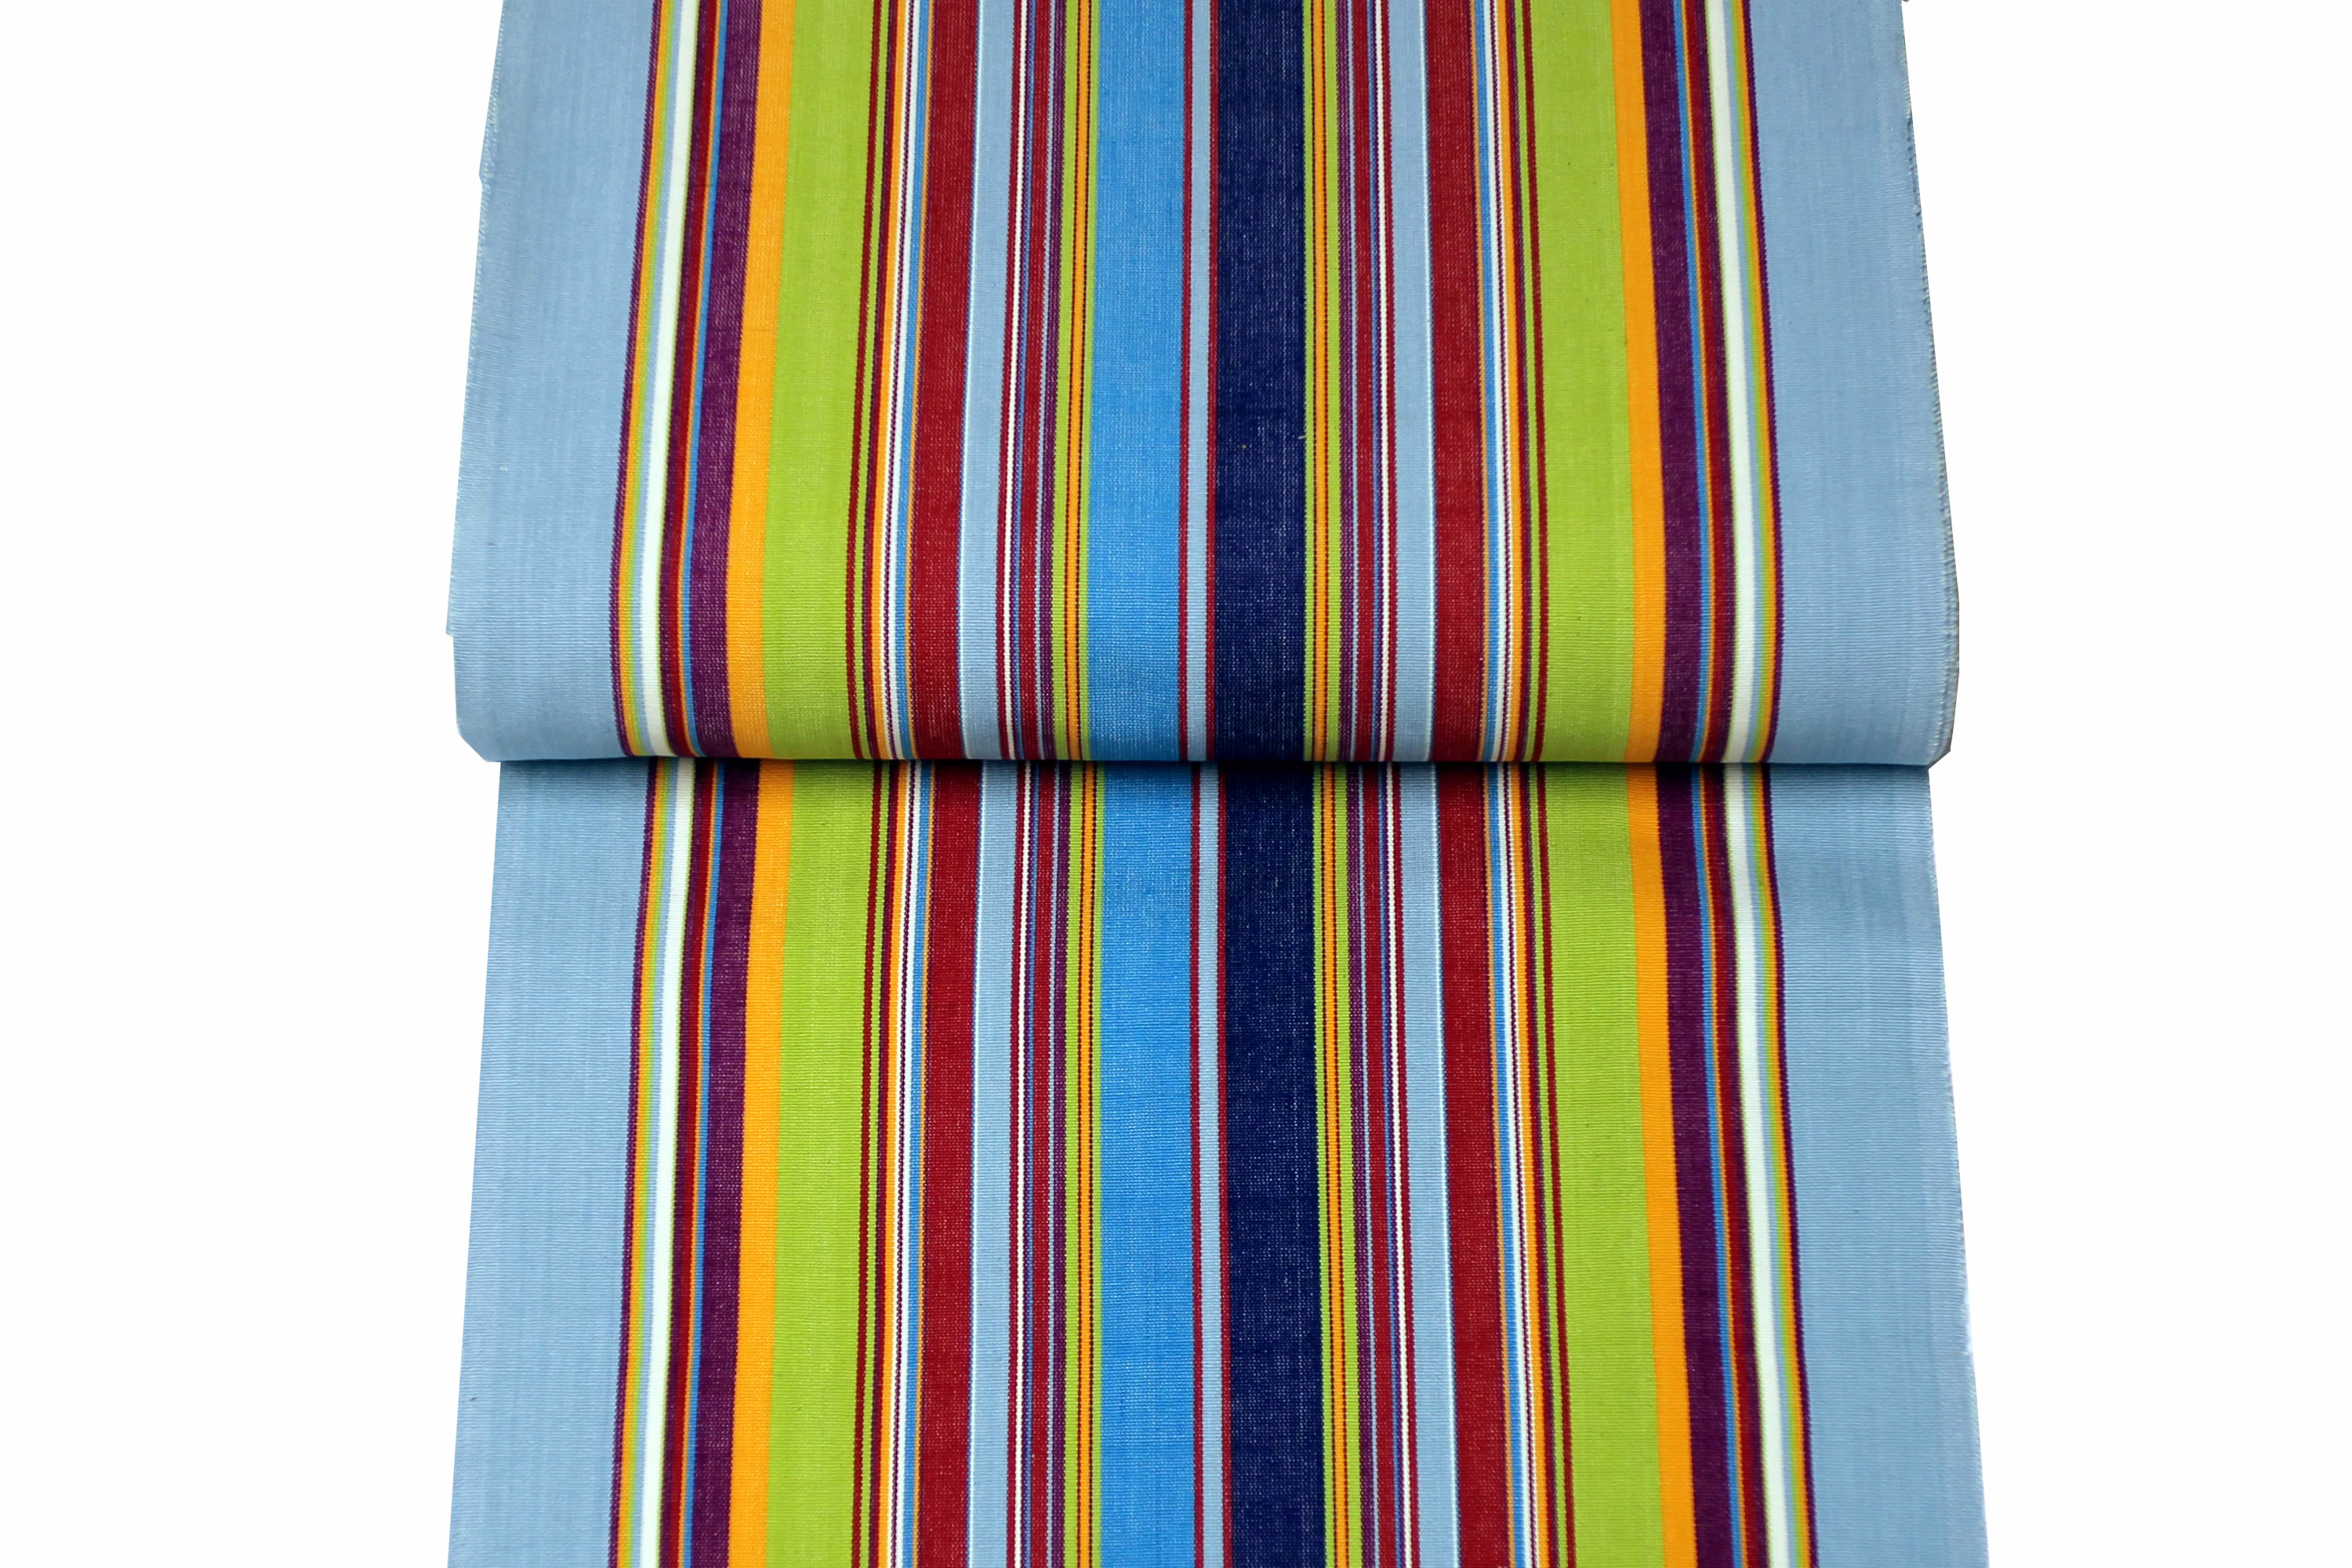 Pale Blue Deckchair Canvas | Deckchair Fabrics | Striped Deck Chair Fabrics Flamenco Stripes